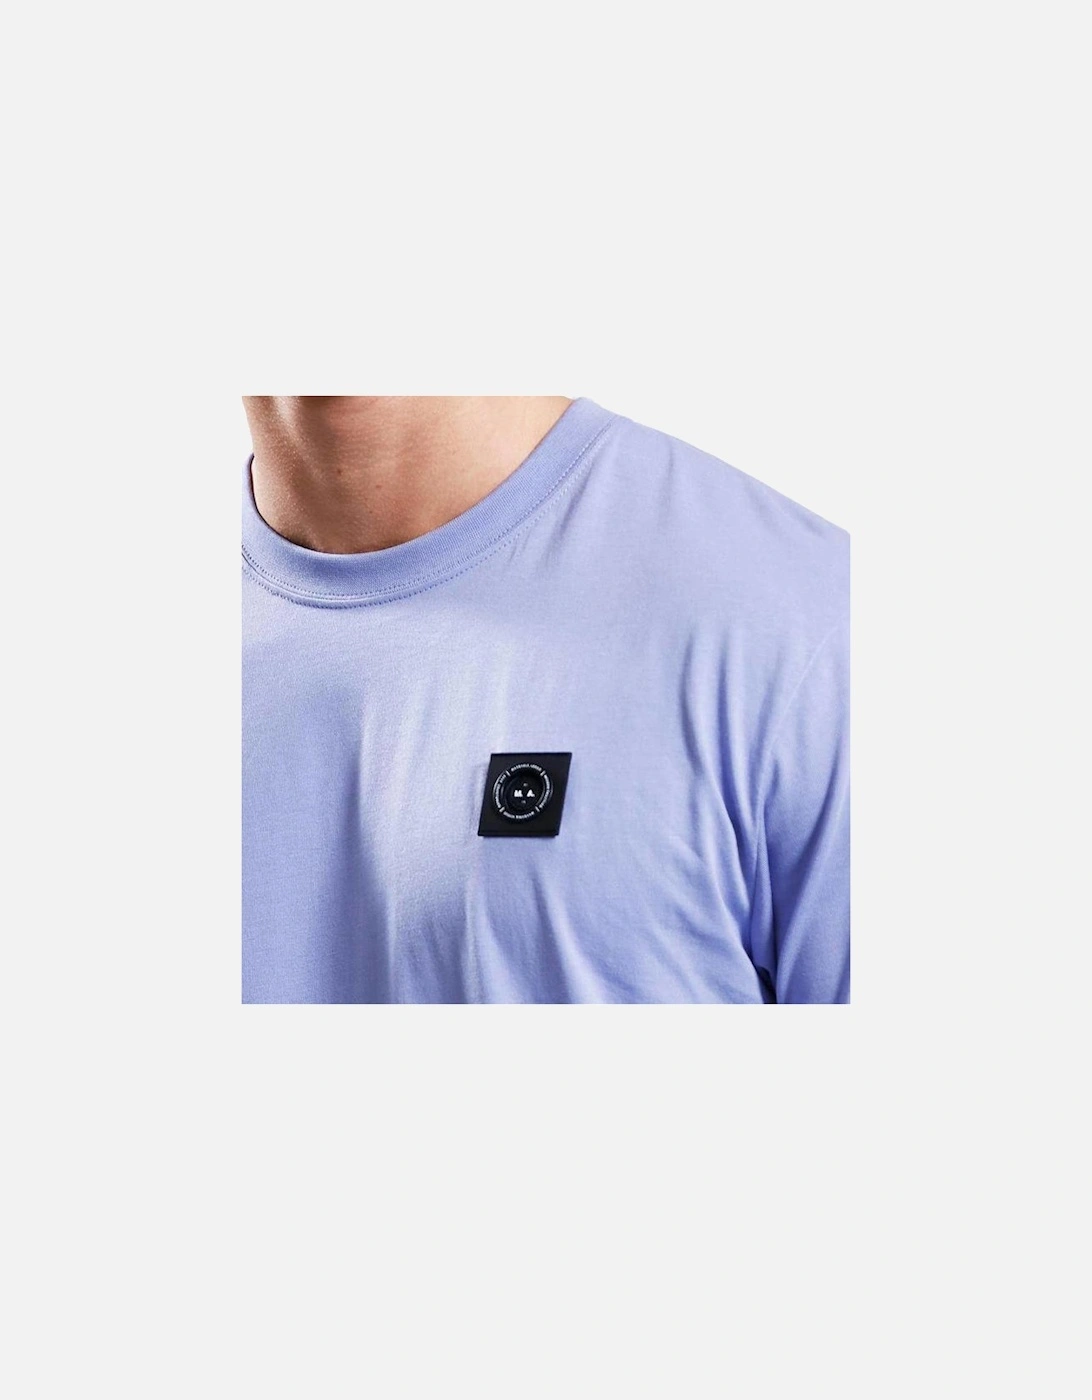 Siren T-Shirt - Ultra Violet